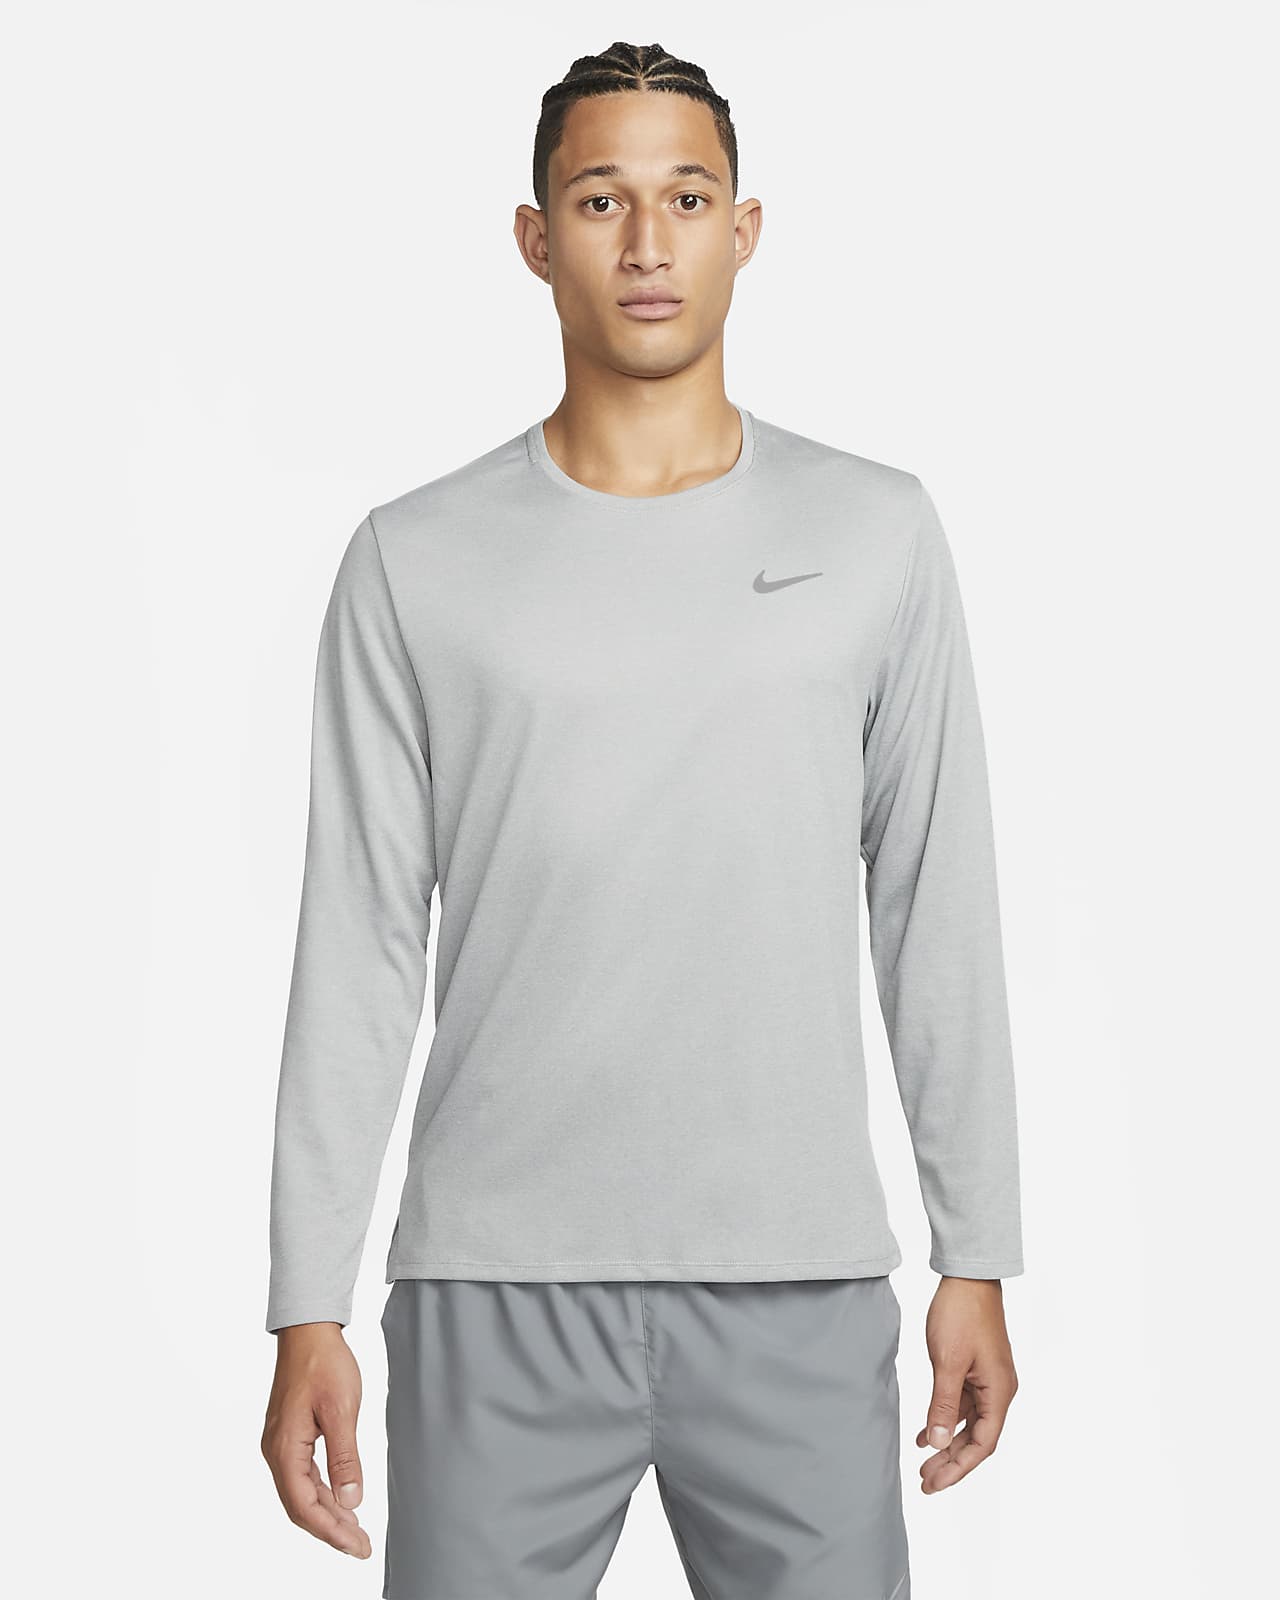 Nike Miler Men's UV Long-Sleeve Running Top.